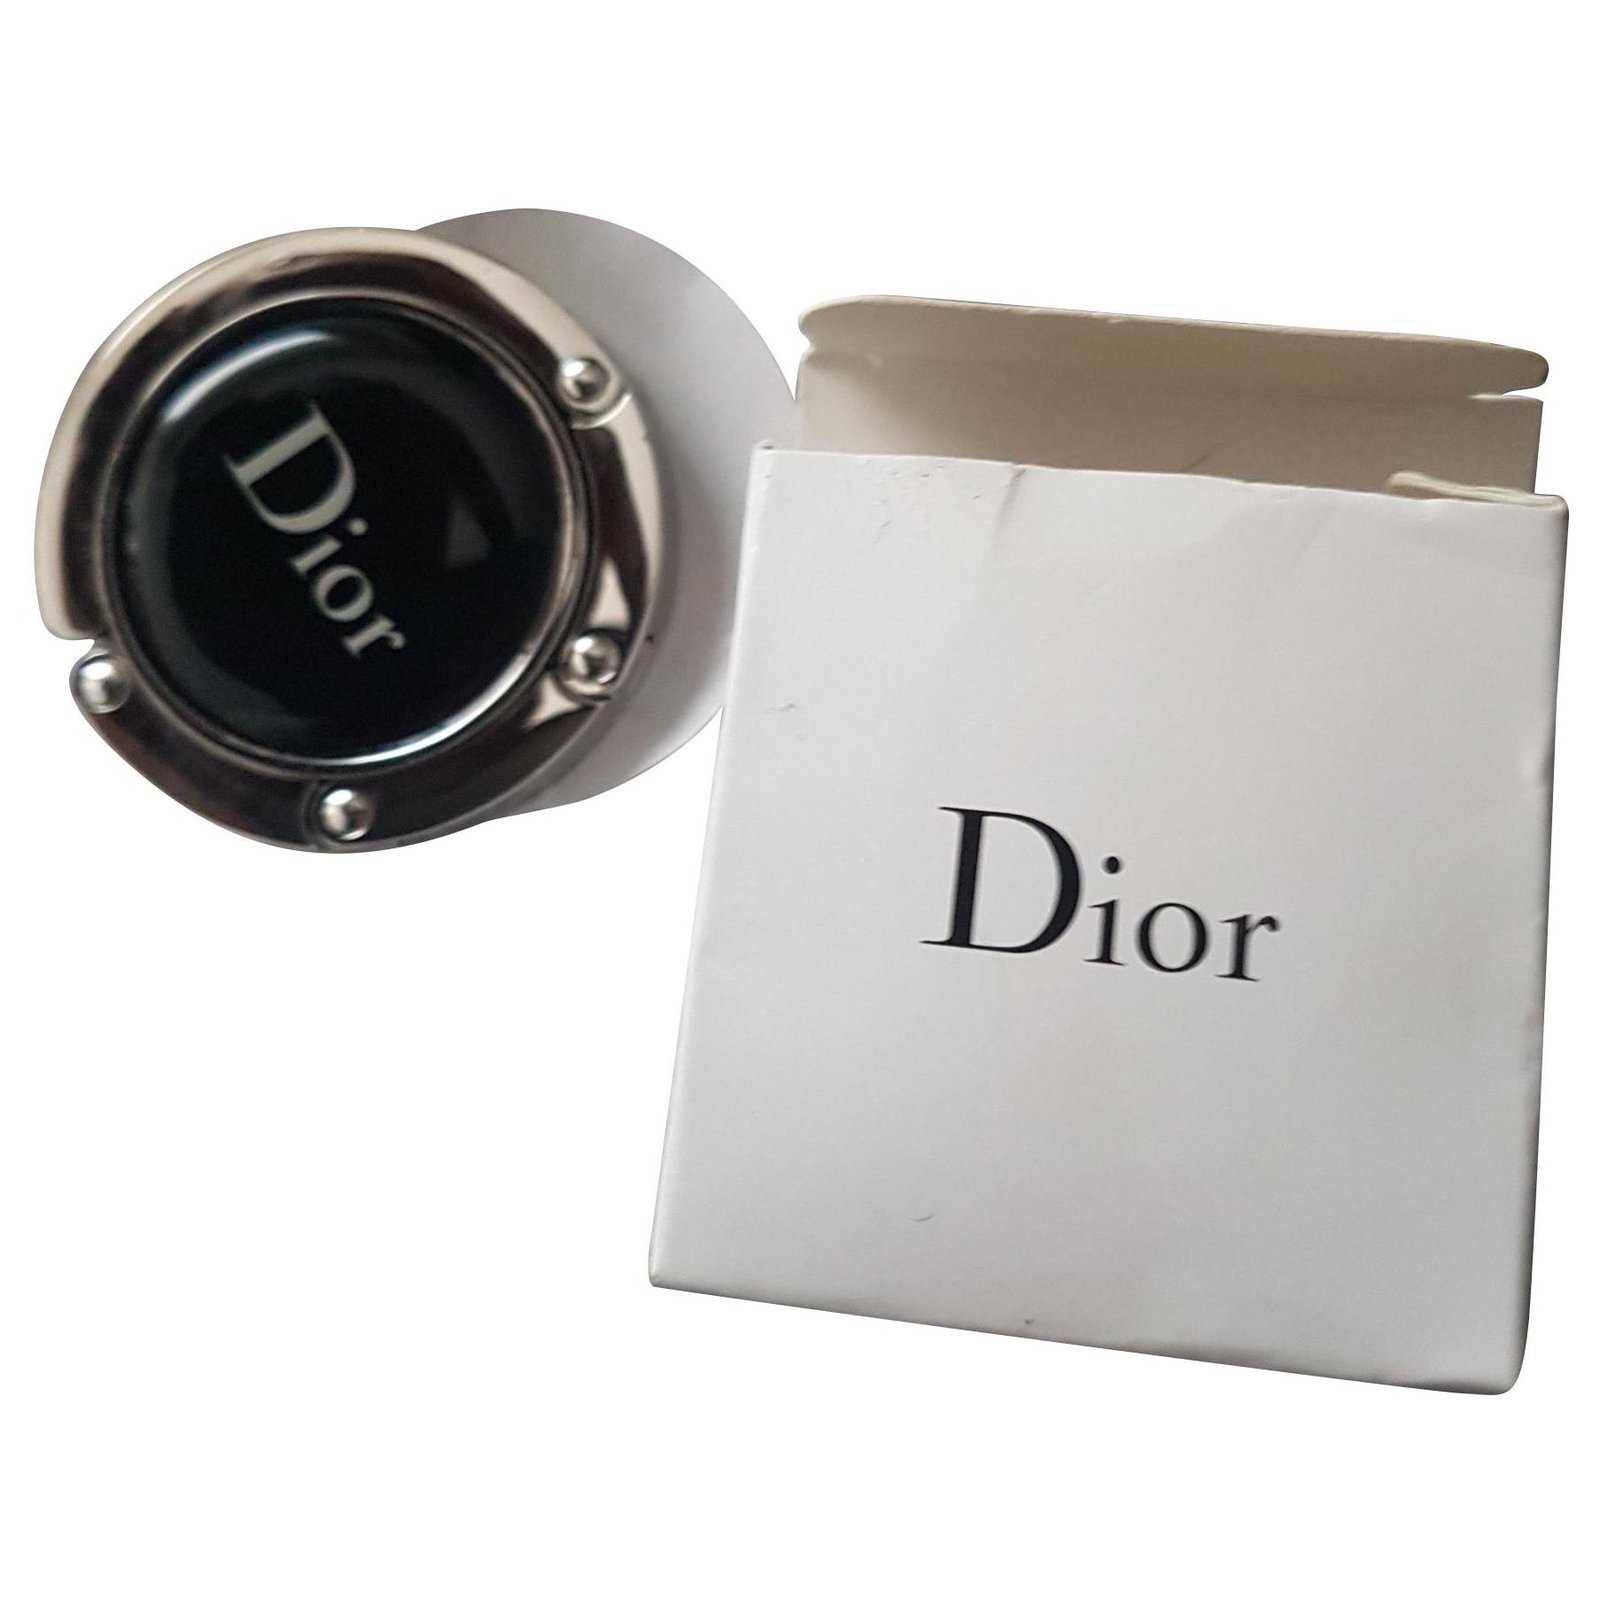 Dior vip membership